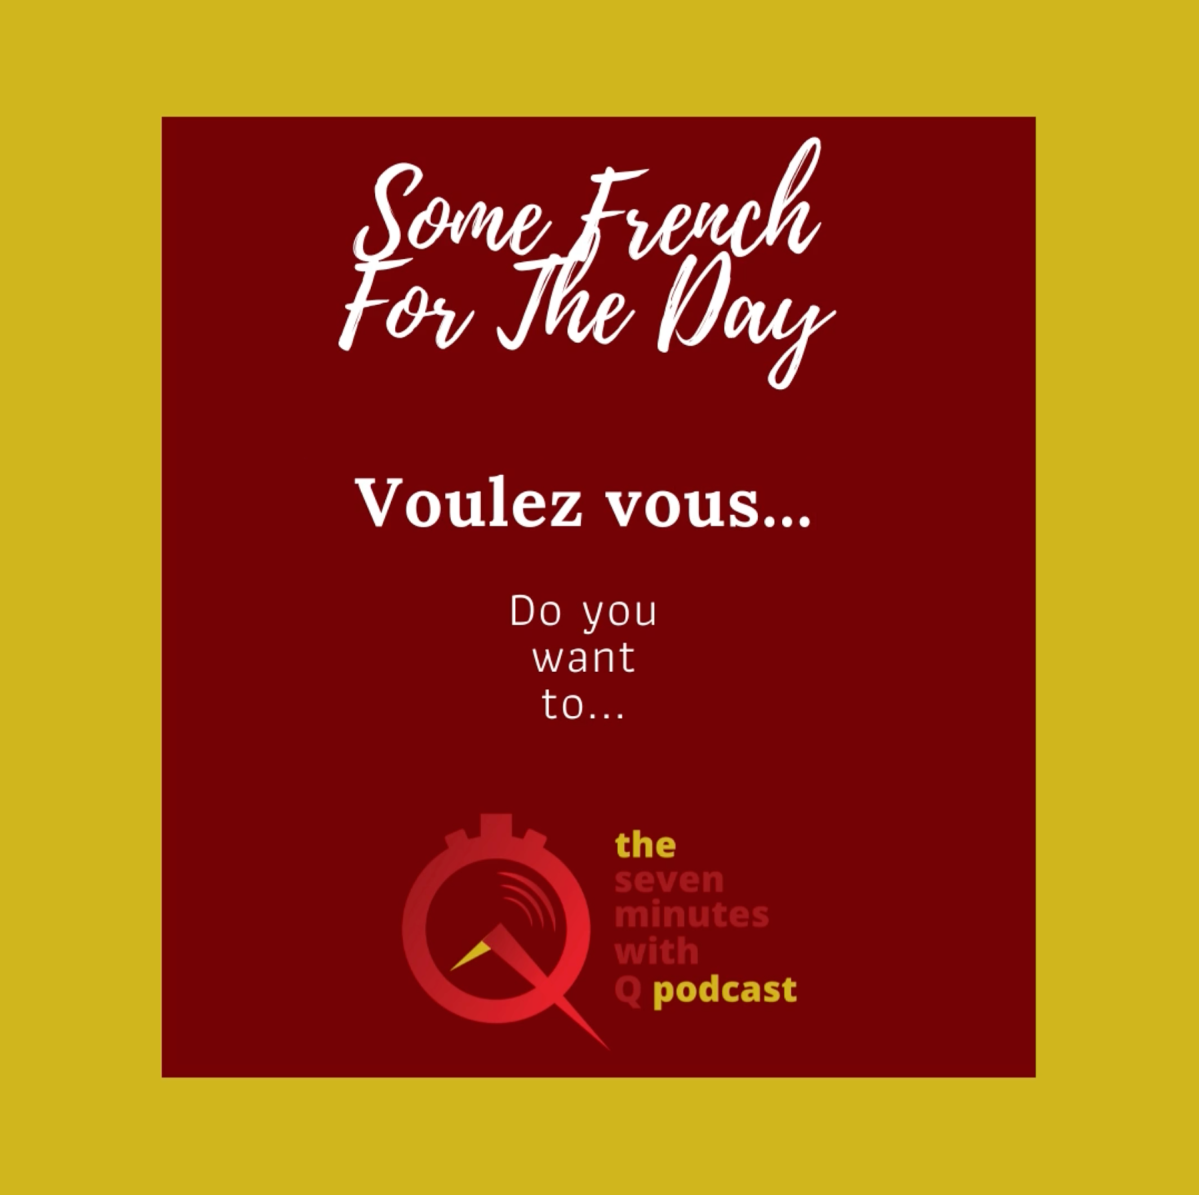 Français 101: What does “voulez vous” mean?